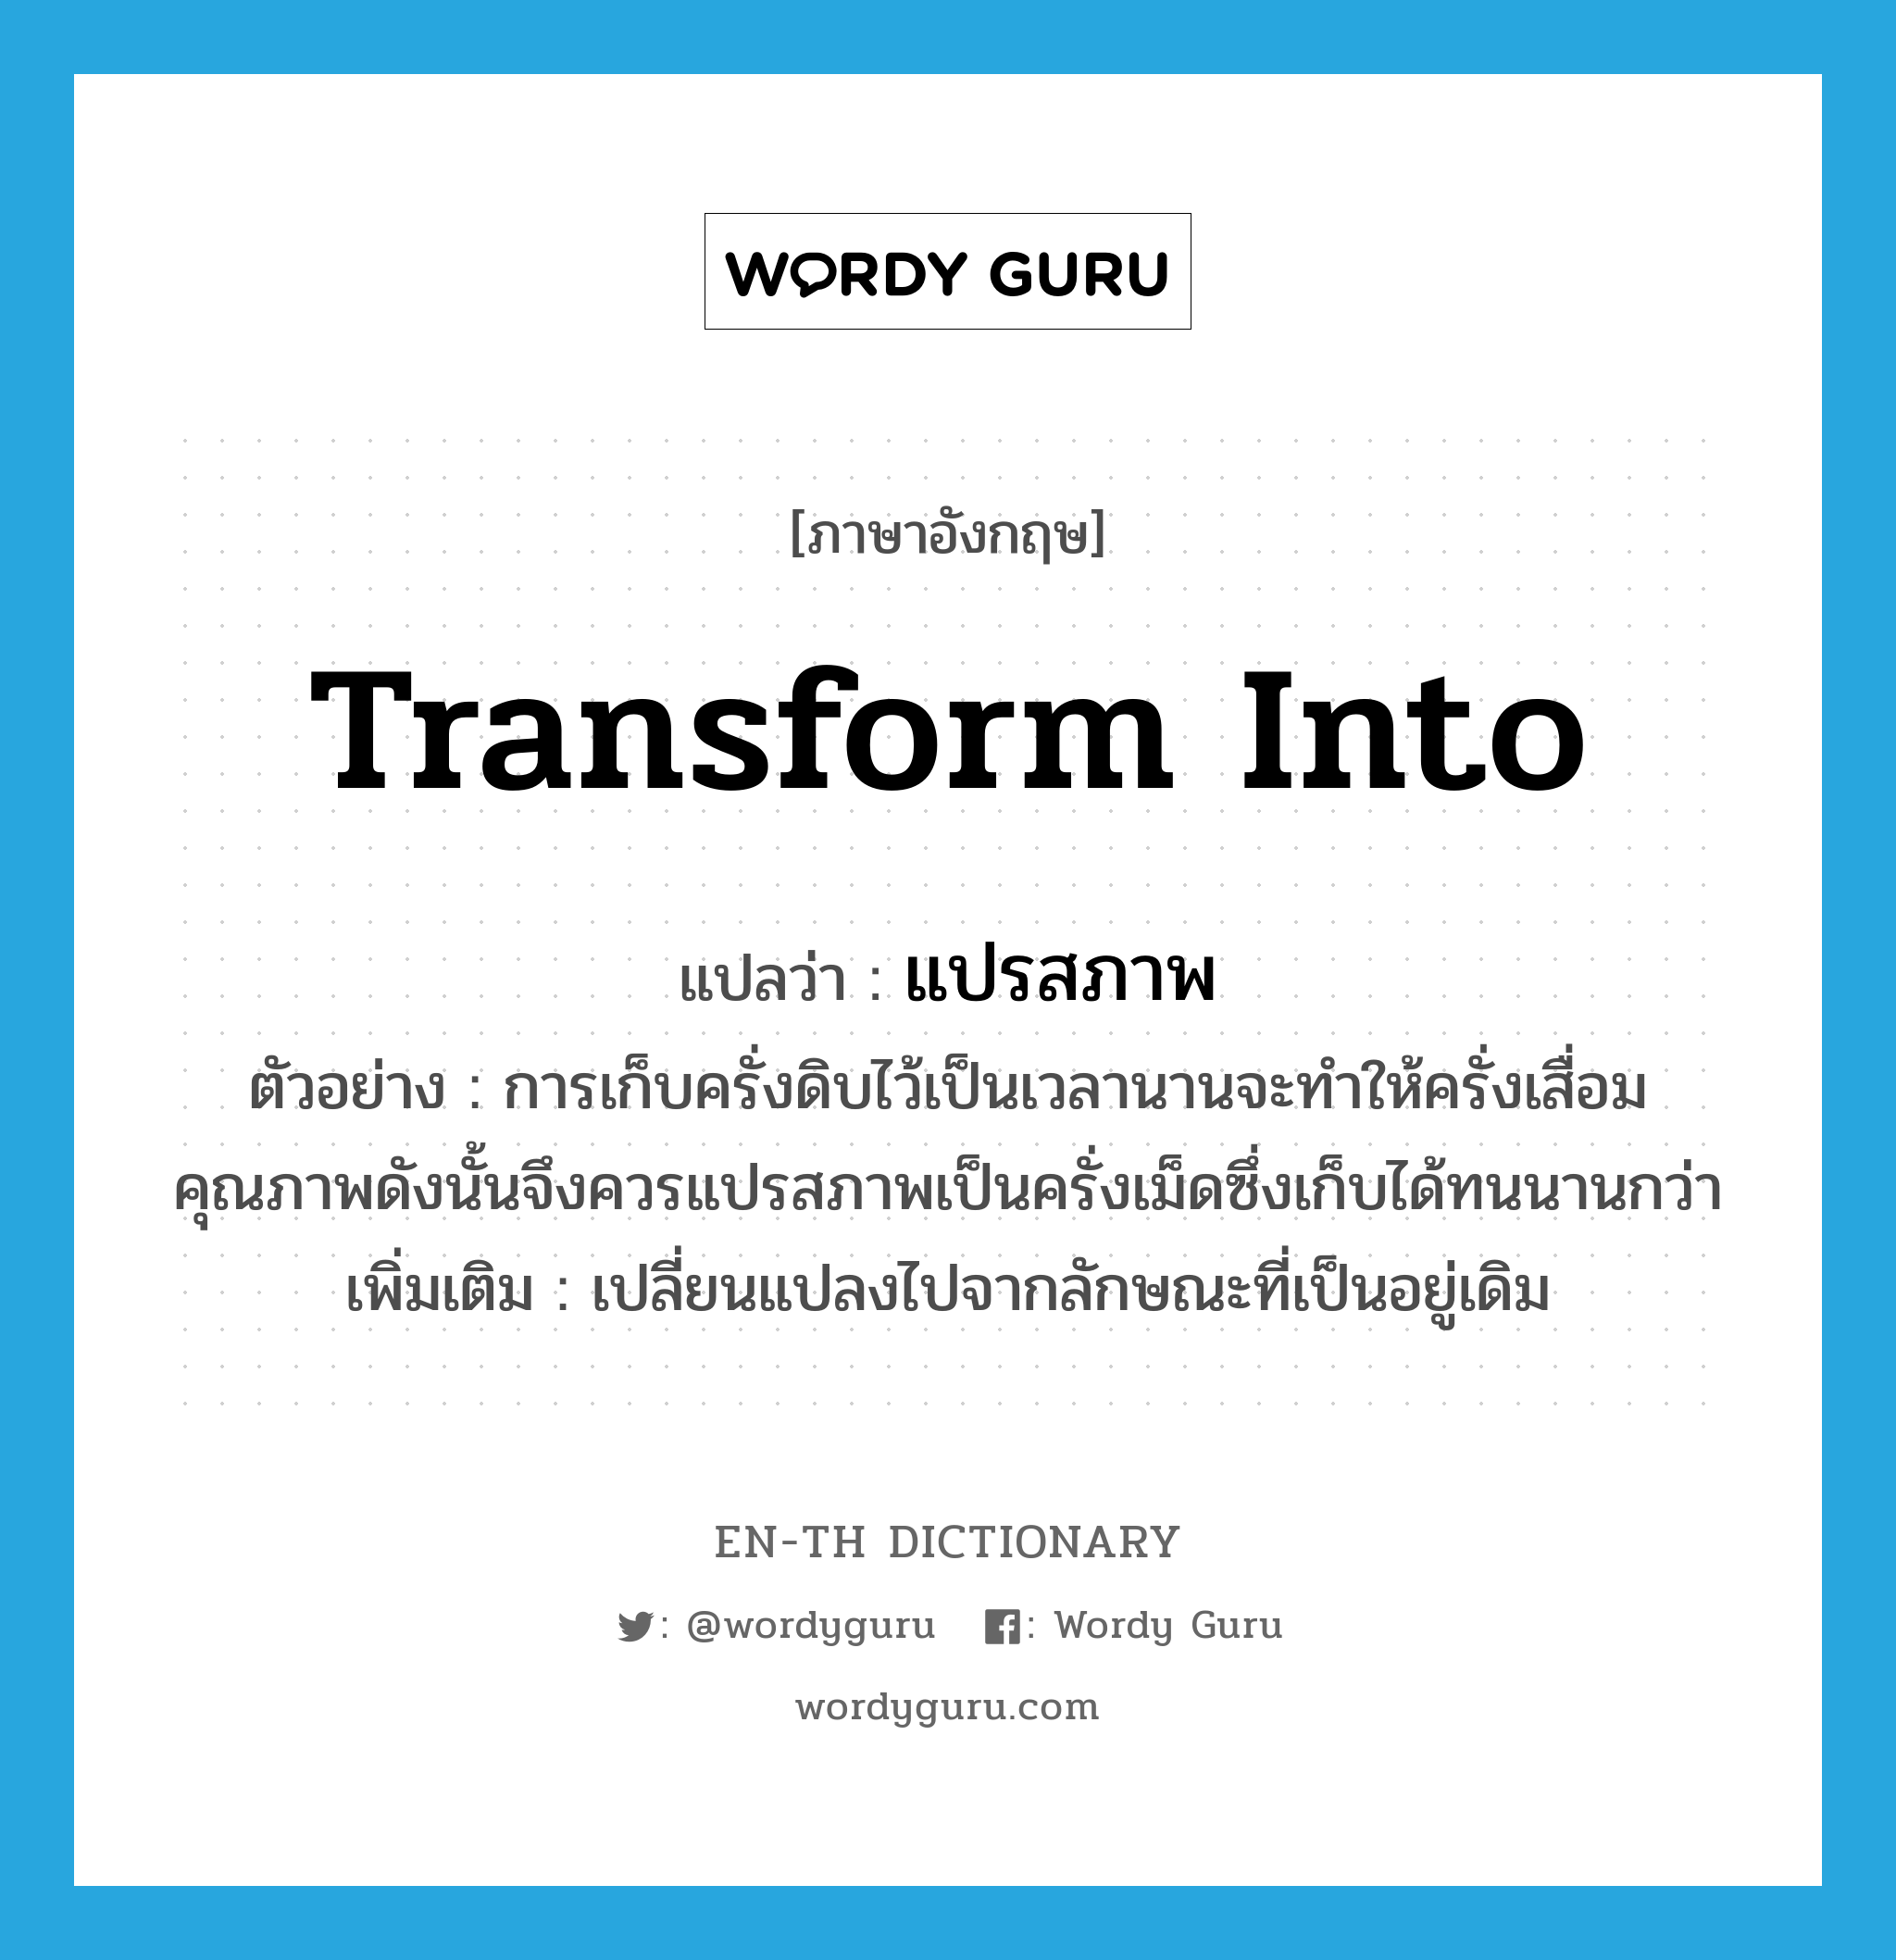 transform into แปลว่า?, คำศัพท์ภาษาอังกฤษ transform into แปลว่า แปรสภาพ ประเภท V ตัวอย่าง การเก็บครั่งดิบไว้เป็นเวลานานจะทำให้ครั่งเสื่อมคุณภาพดังนั้นจึงควรแปรสภาพเป็นครั่งเม็ดซึ่งเก็บได้ทนนานกว่า เพิ่มเติม เปลี่ยนแปลงไปจากลักษณะที่เป็นอยู่เดิม หมวด V